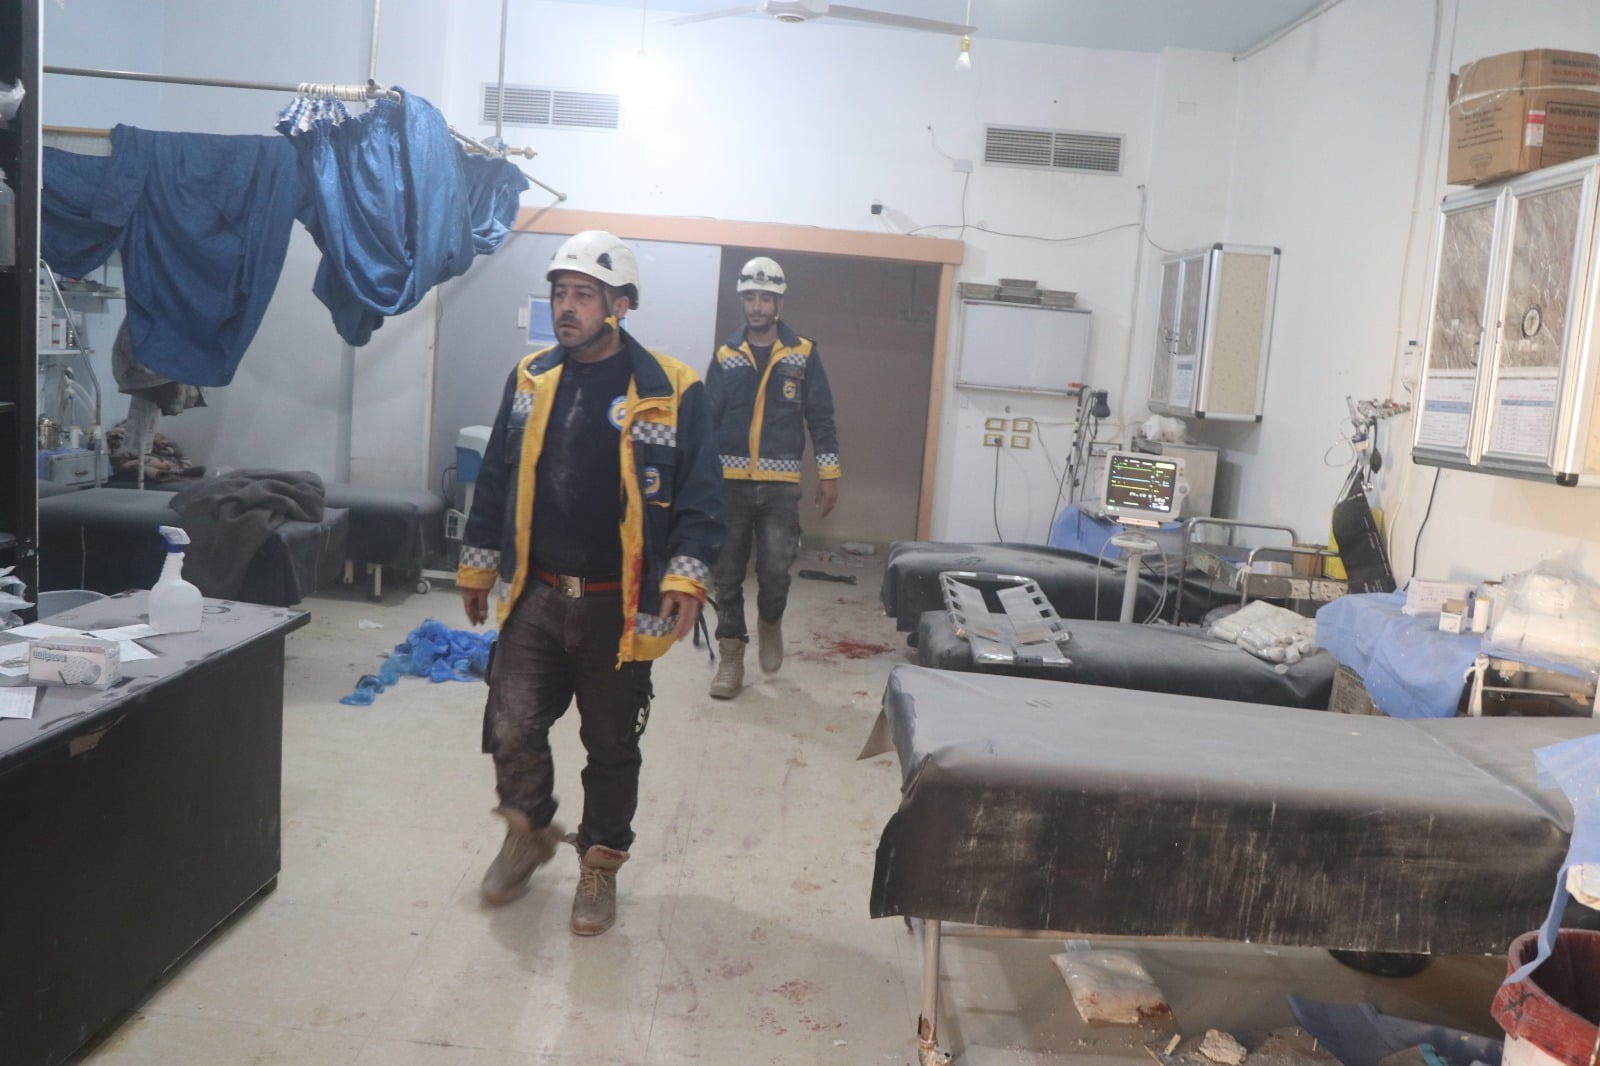 أدانت منظمات ومؤسسات إنسانية في المناطق المحررة المجزرة التي ارتكبتها قوات الأسد في مشفى المغارة بمدينة الأتارب بريف حلب الغربي.